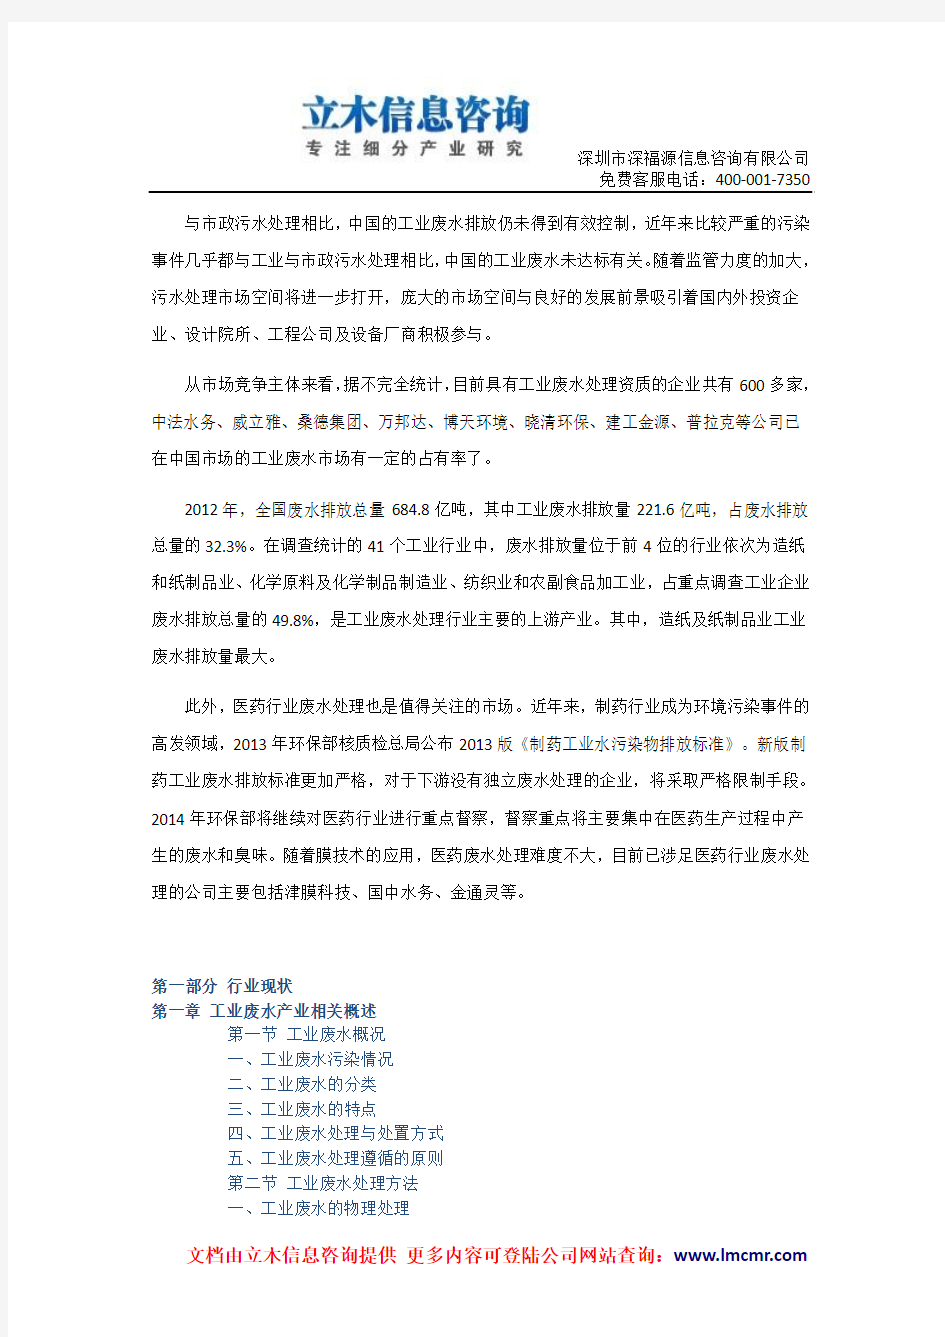 中国工业废水治理市场预测研究报告(2014版)